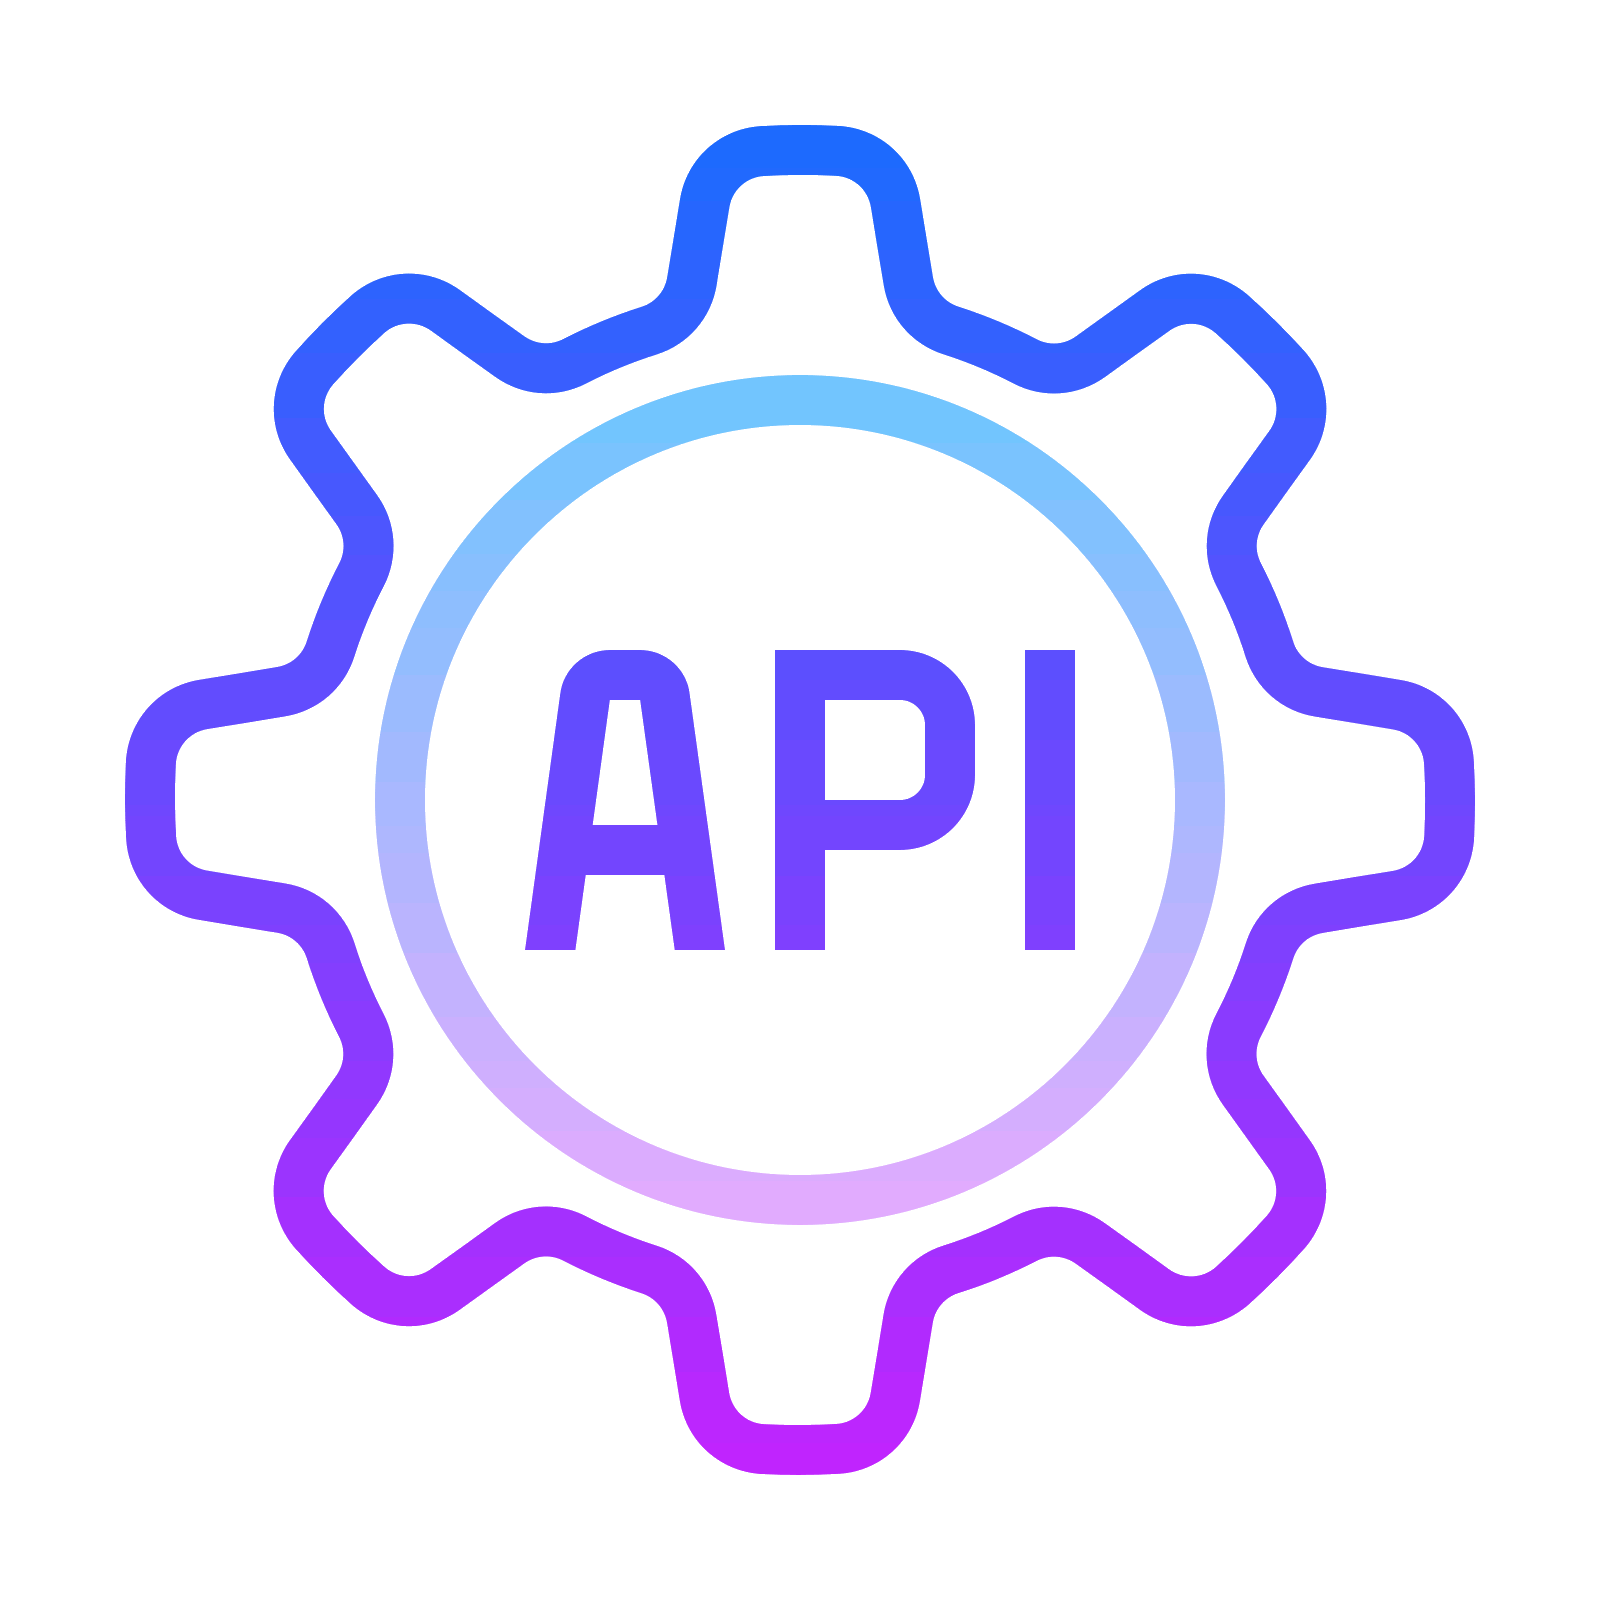 Https api on ru. API иконка. API интеграция. Интеграция значок. Rest API иконка.